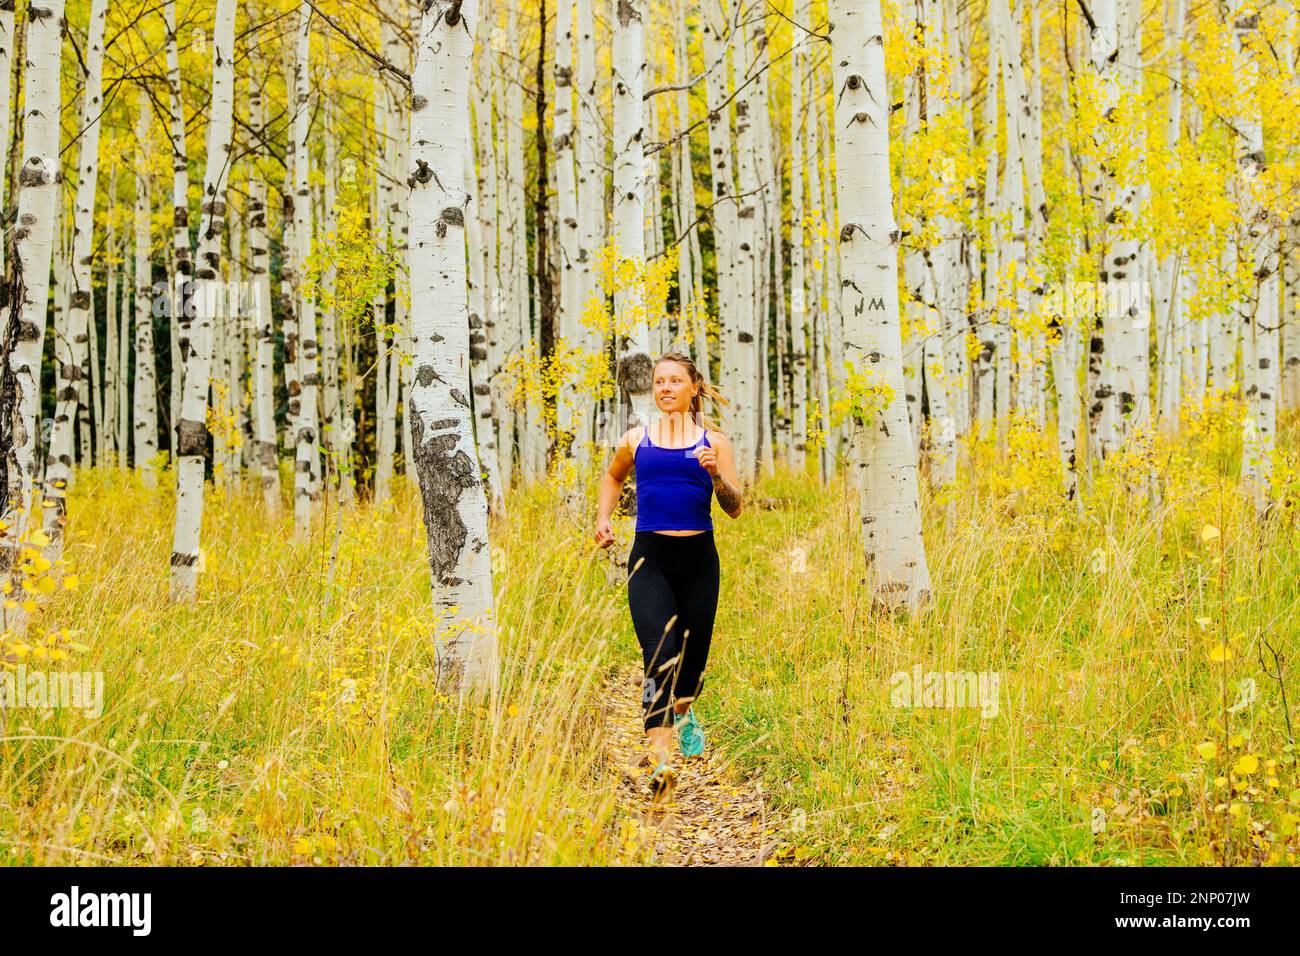 Donna che fa jogging nella foresta di betulla in autunno, Durango, Colorado, USA Foto Stock